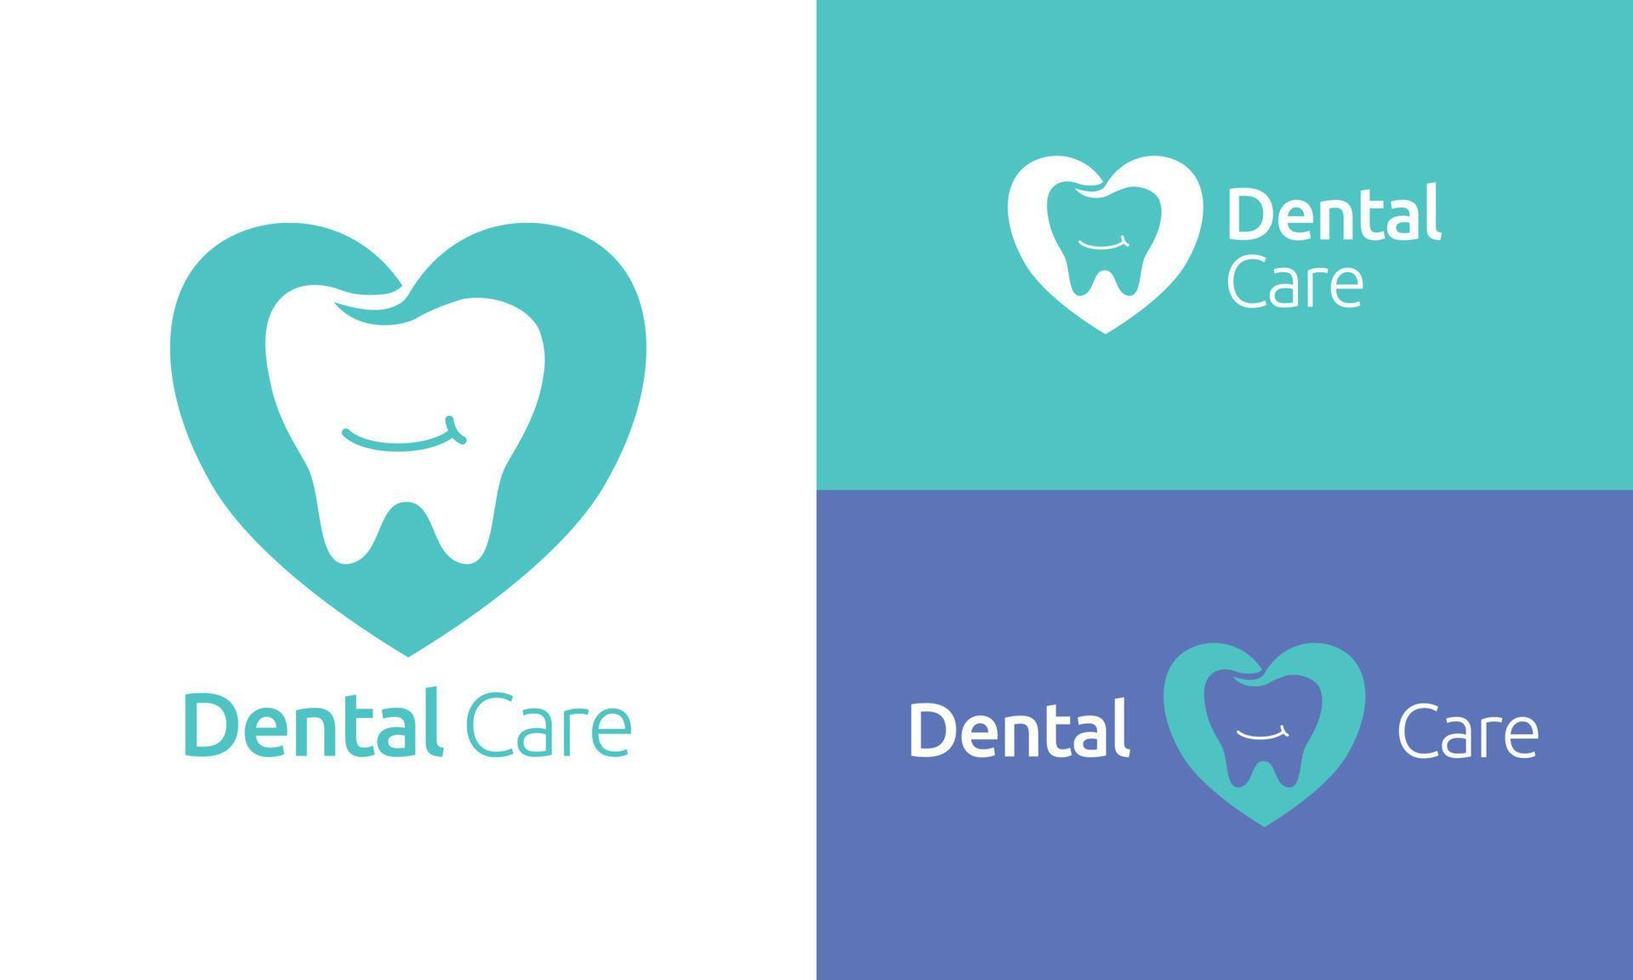 esta dental cuidado logo es un símbolo de el amor y cuidado nosotros poner dentro mantener sano y hermosa sonrisas usted lata utilizar esta logo para tu clínica o tu producto vector